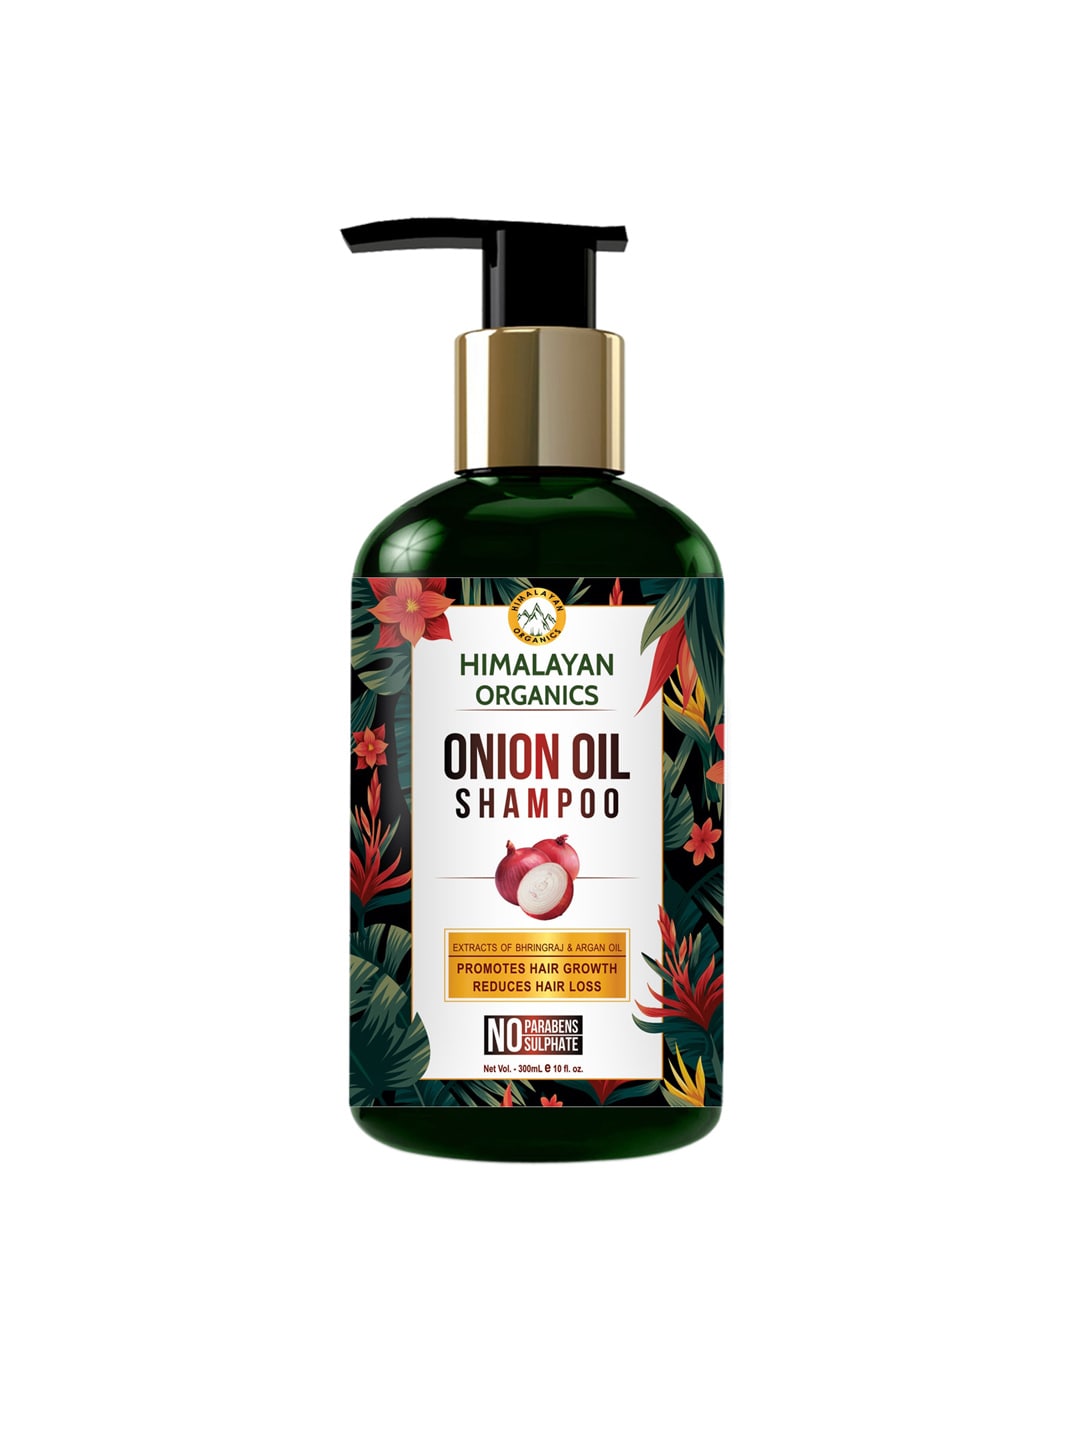 Himalayan Organics Onion Oil Shampoo - 300ml Price in India